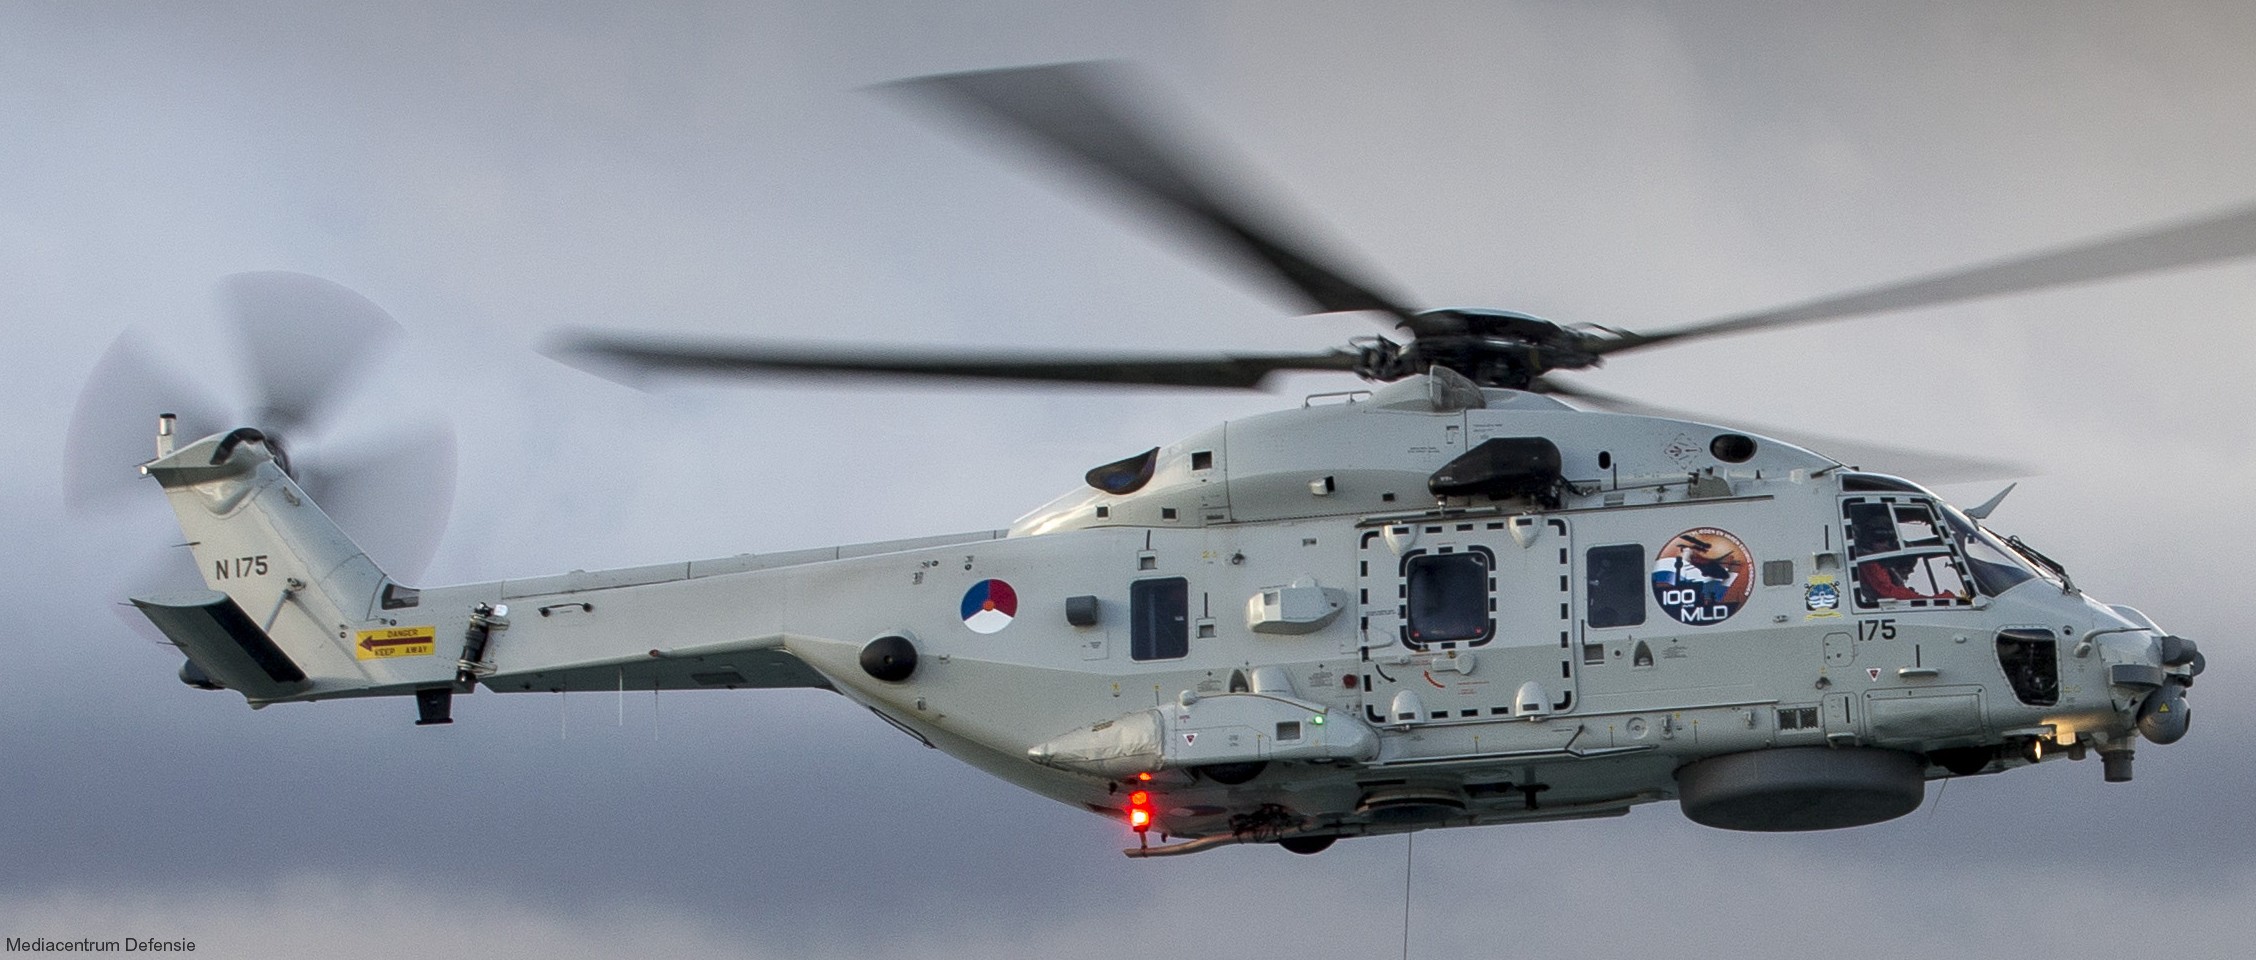 nh90 nfh helicopter royal netherlands navy koninklijke marine n-175 02